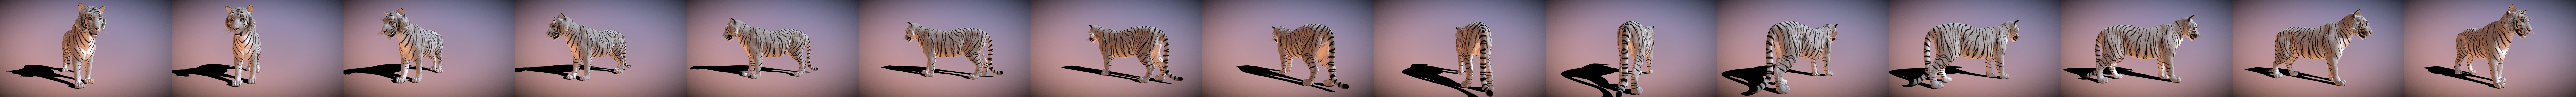 white tiger | 3D model